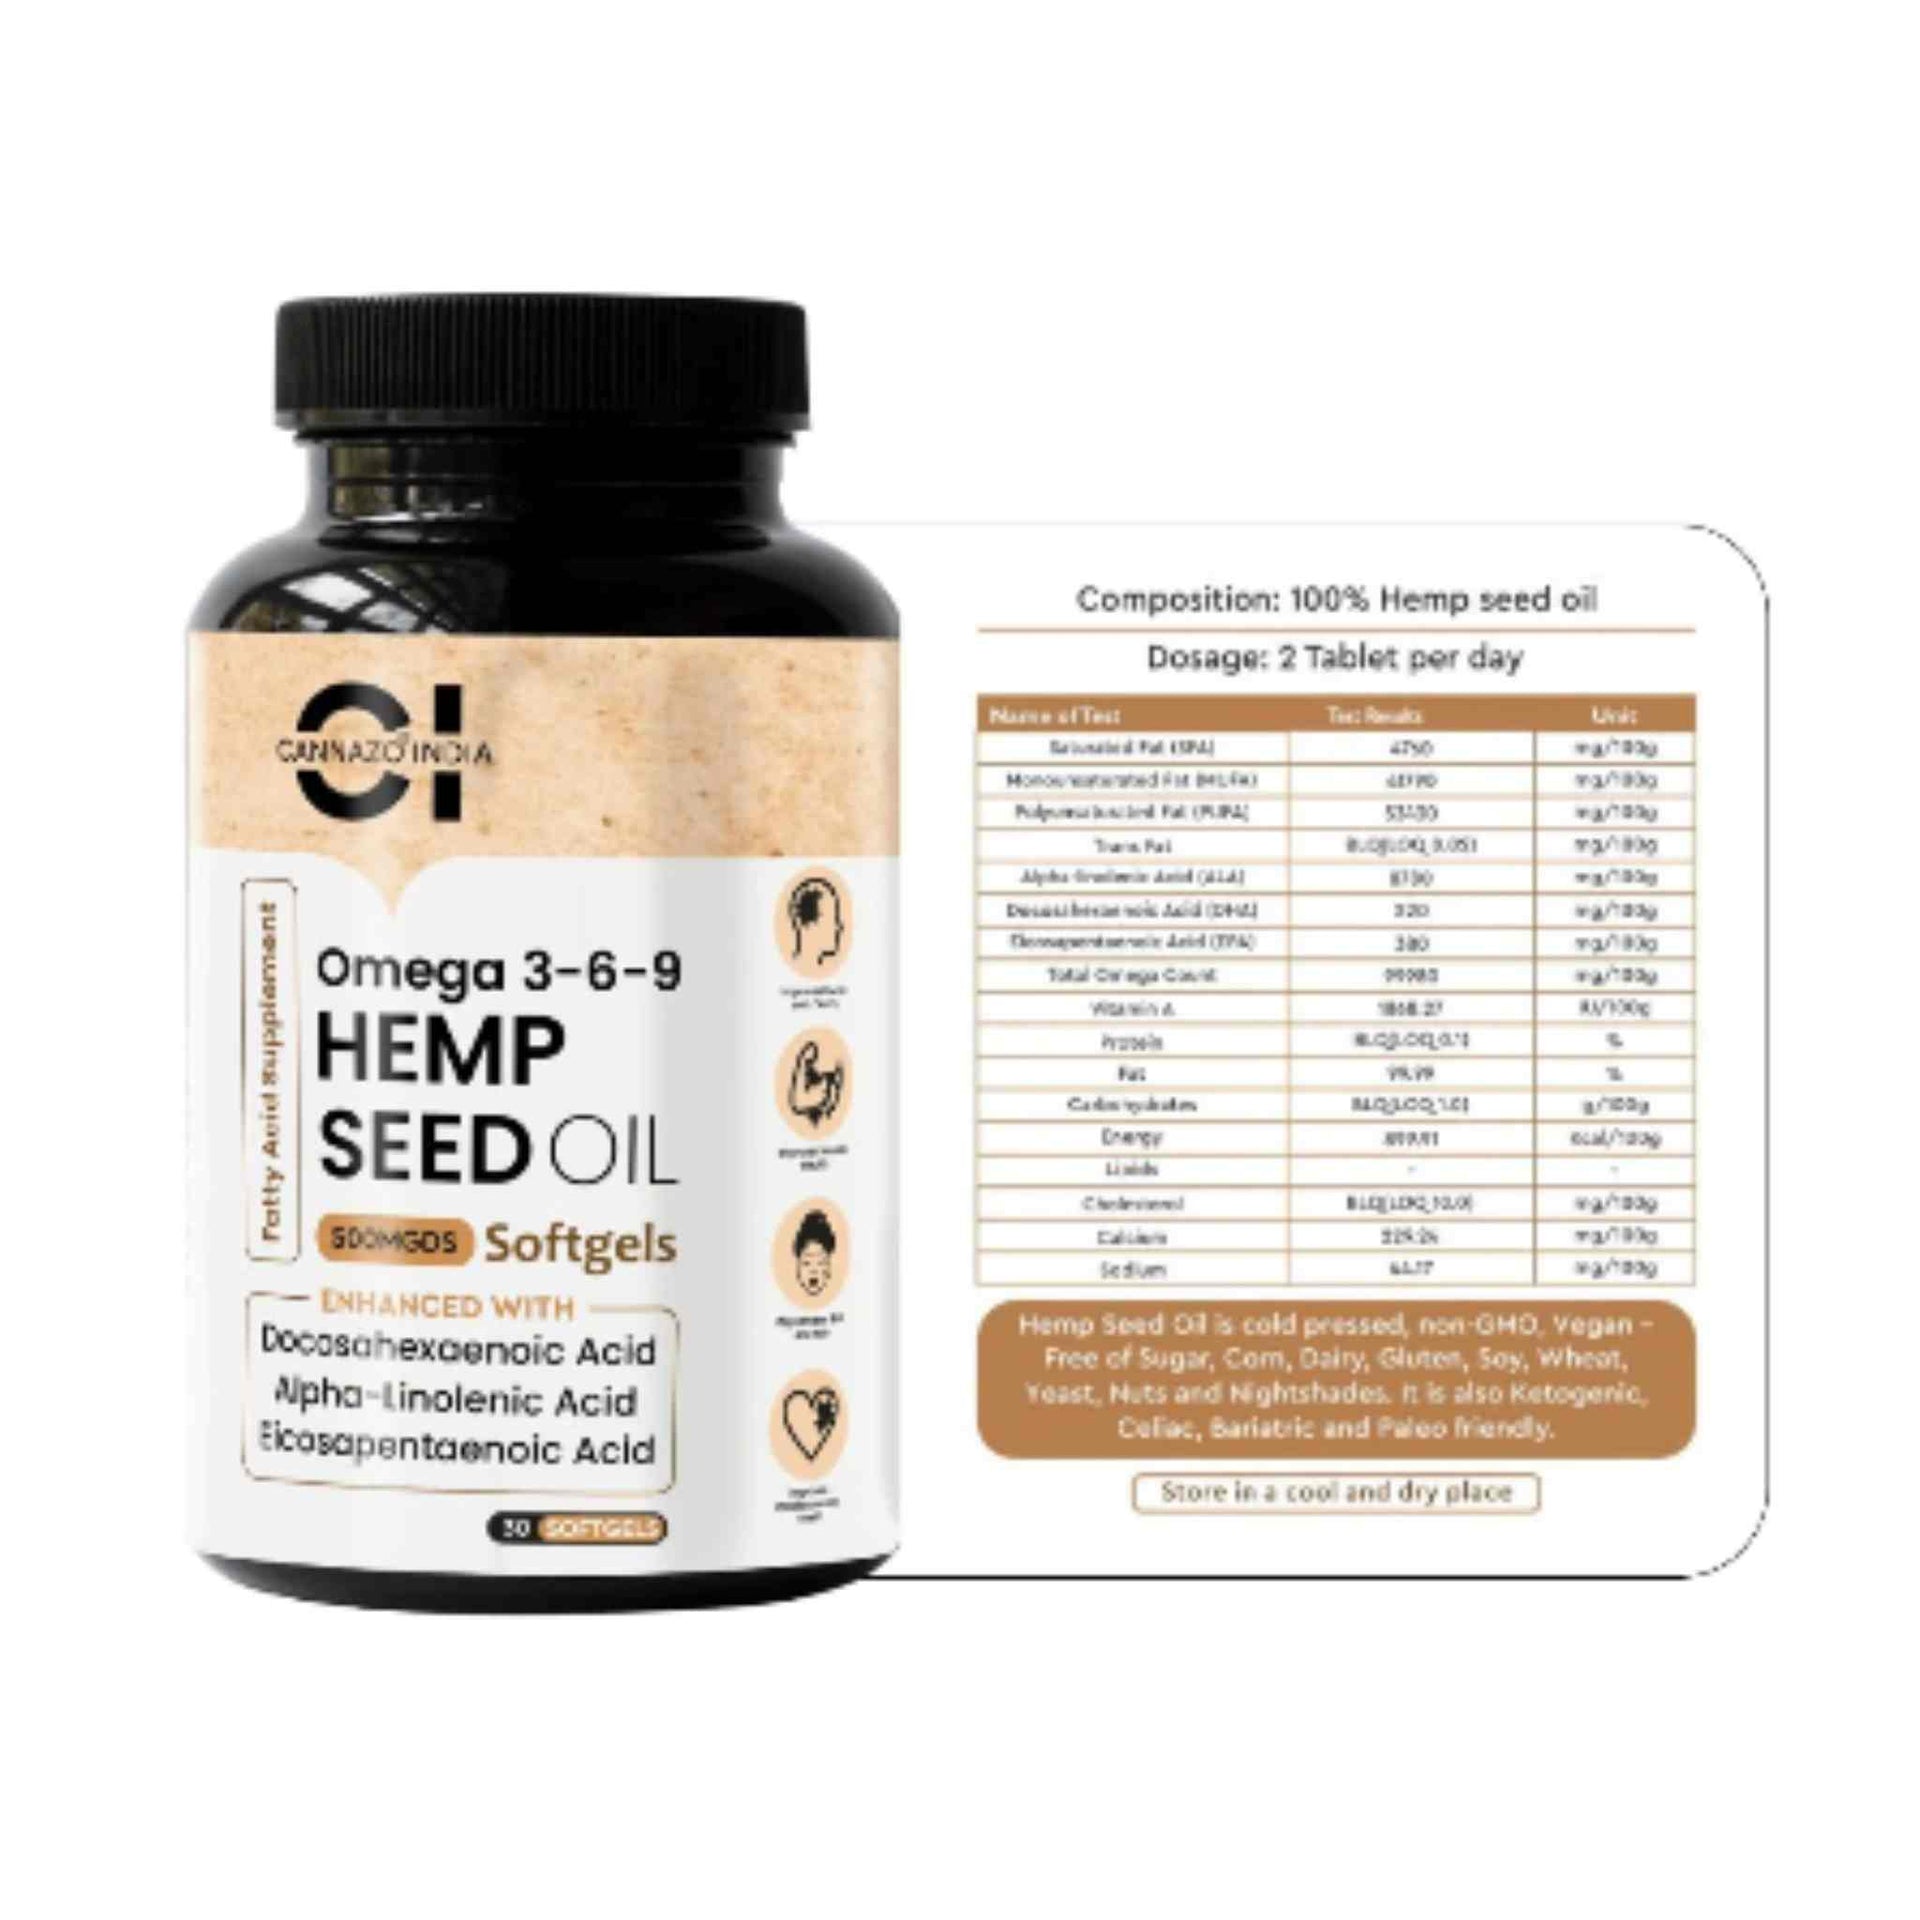 omega 3-6-9 hemp seed oil